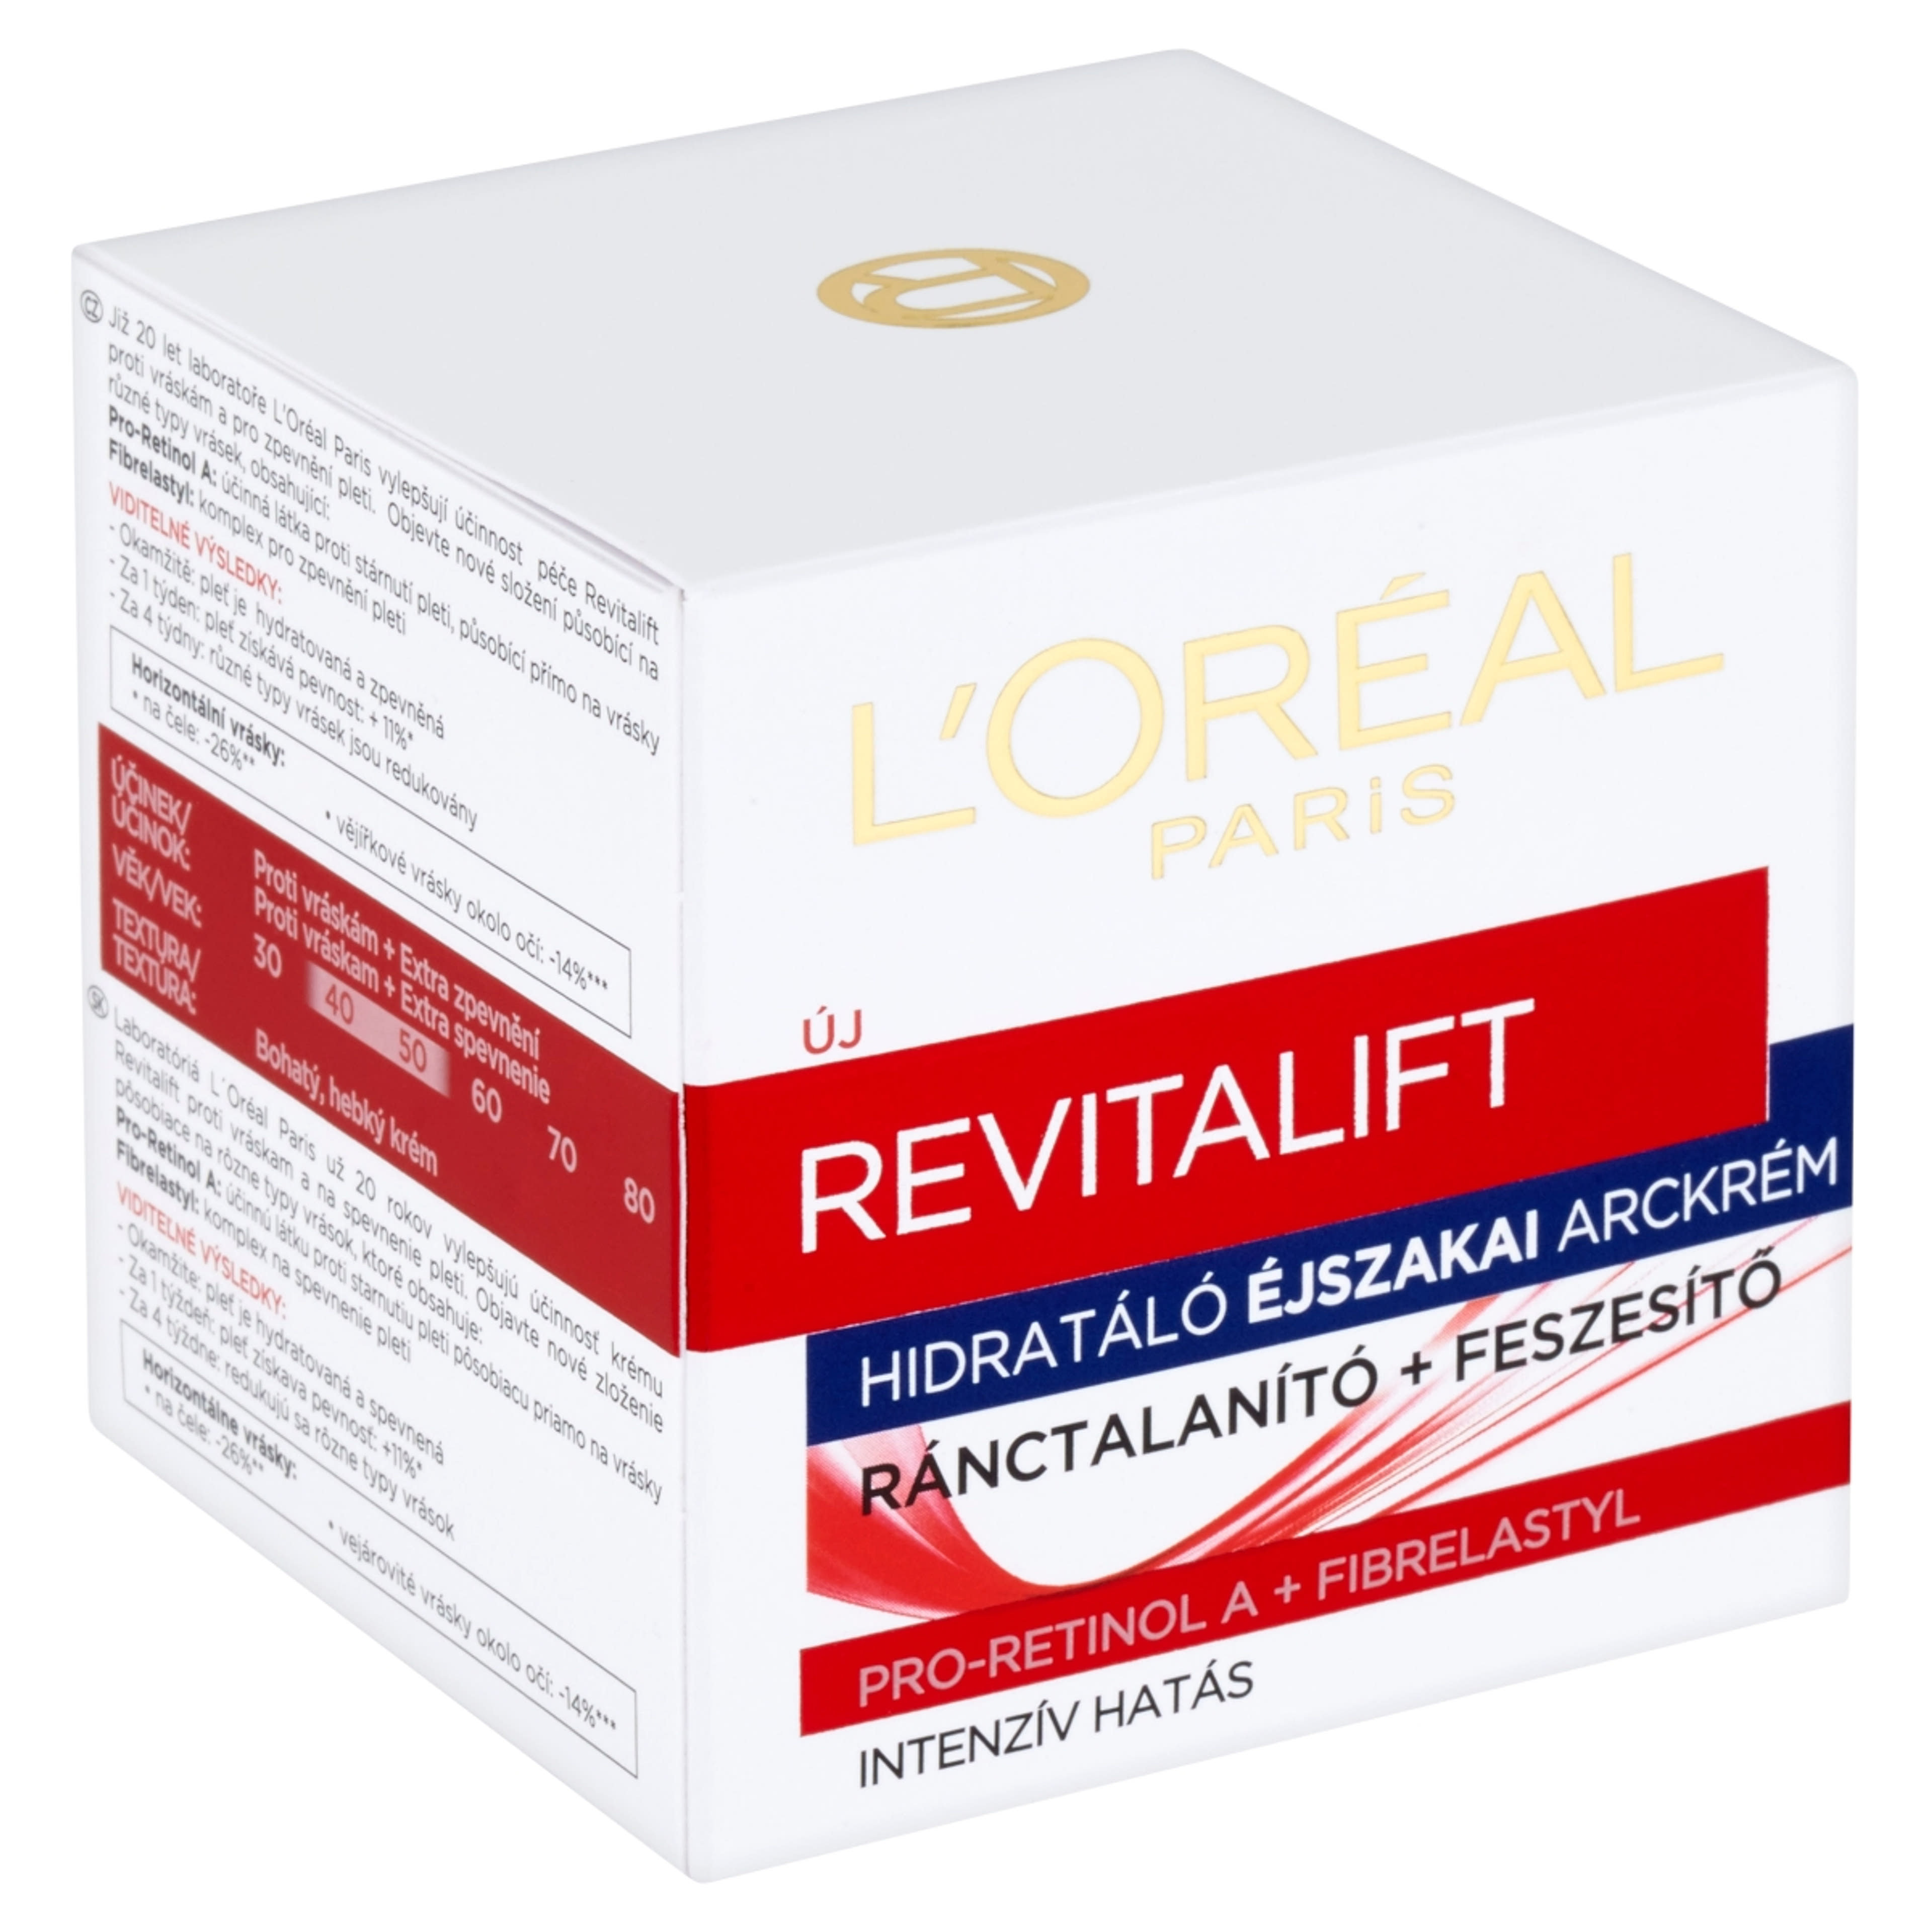 L'Oréal Paris Revitalift hidratáló éjszakai arckrém - 50 ml-3